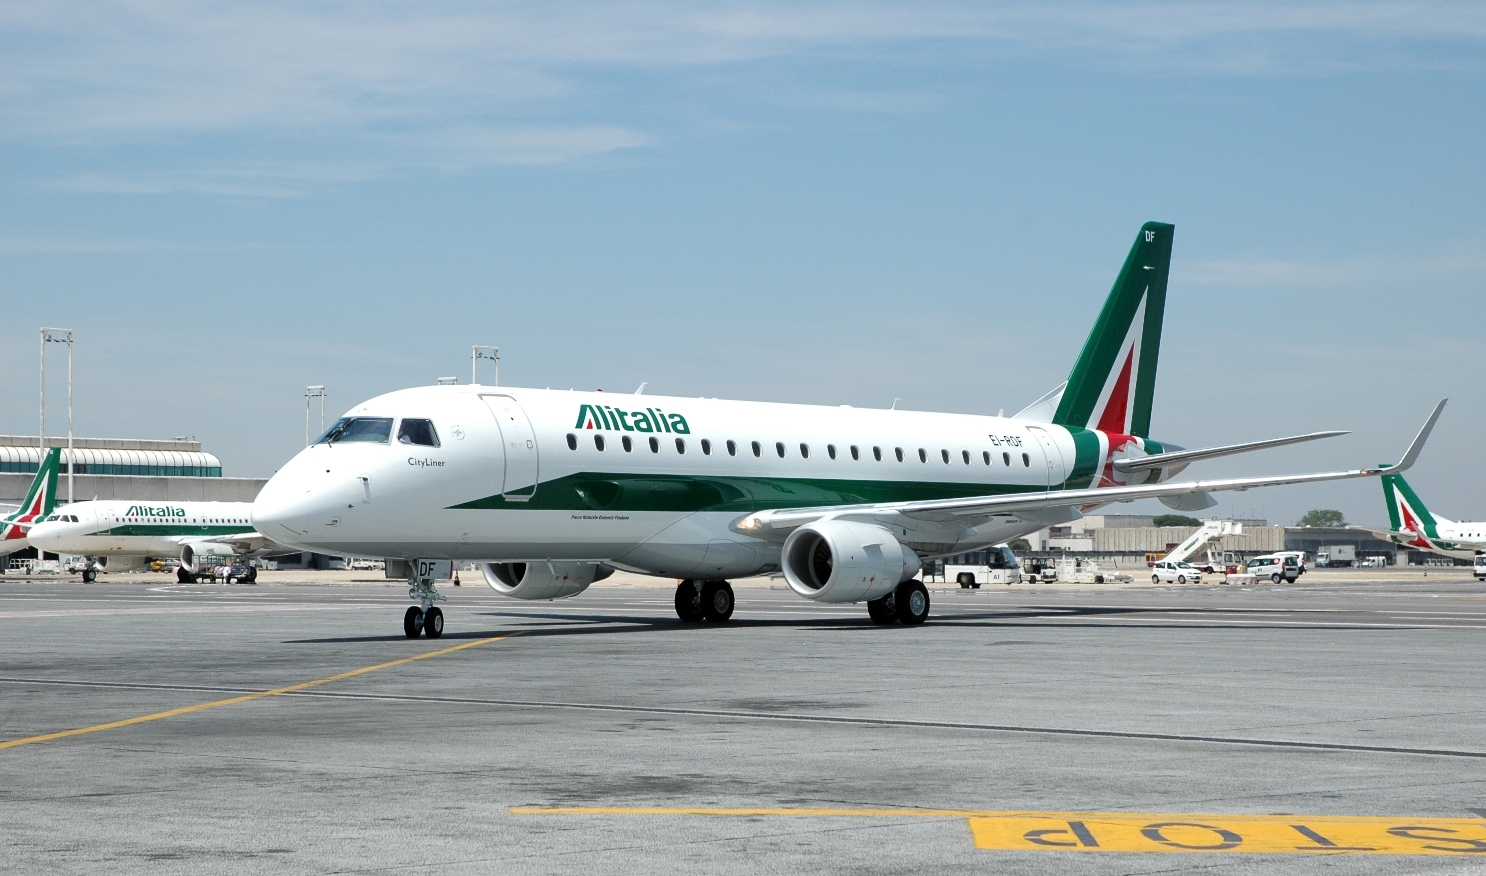 Etna – Riaperto aeroporto di Catania e riprotezione Alitalia